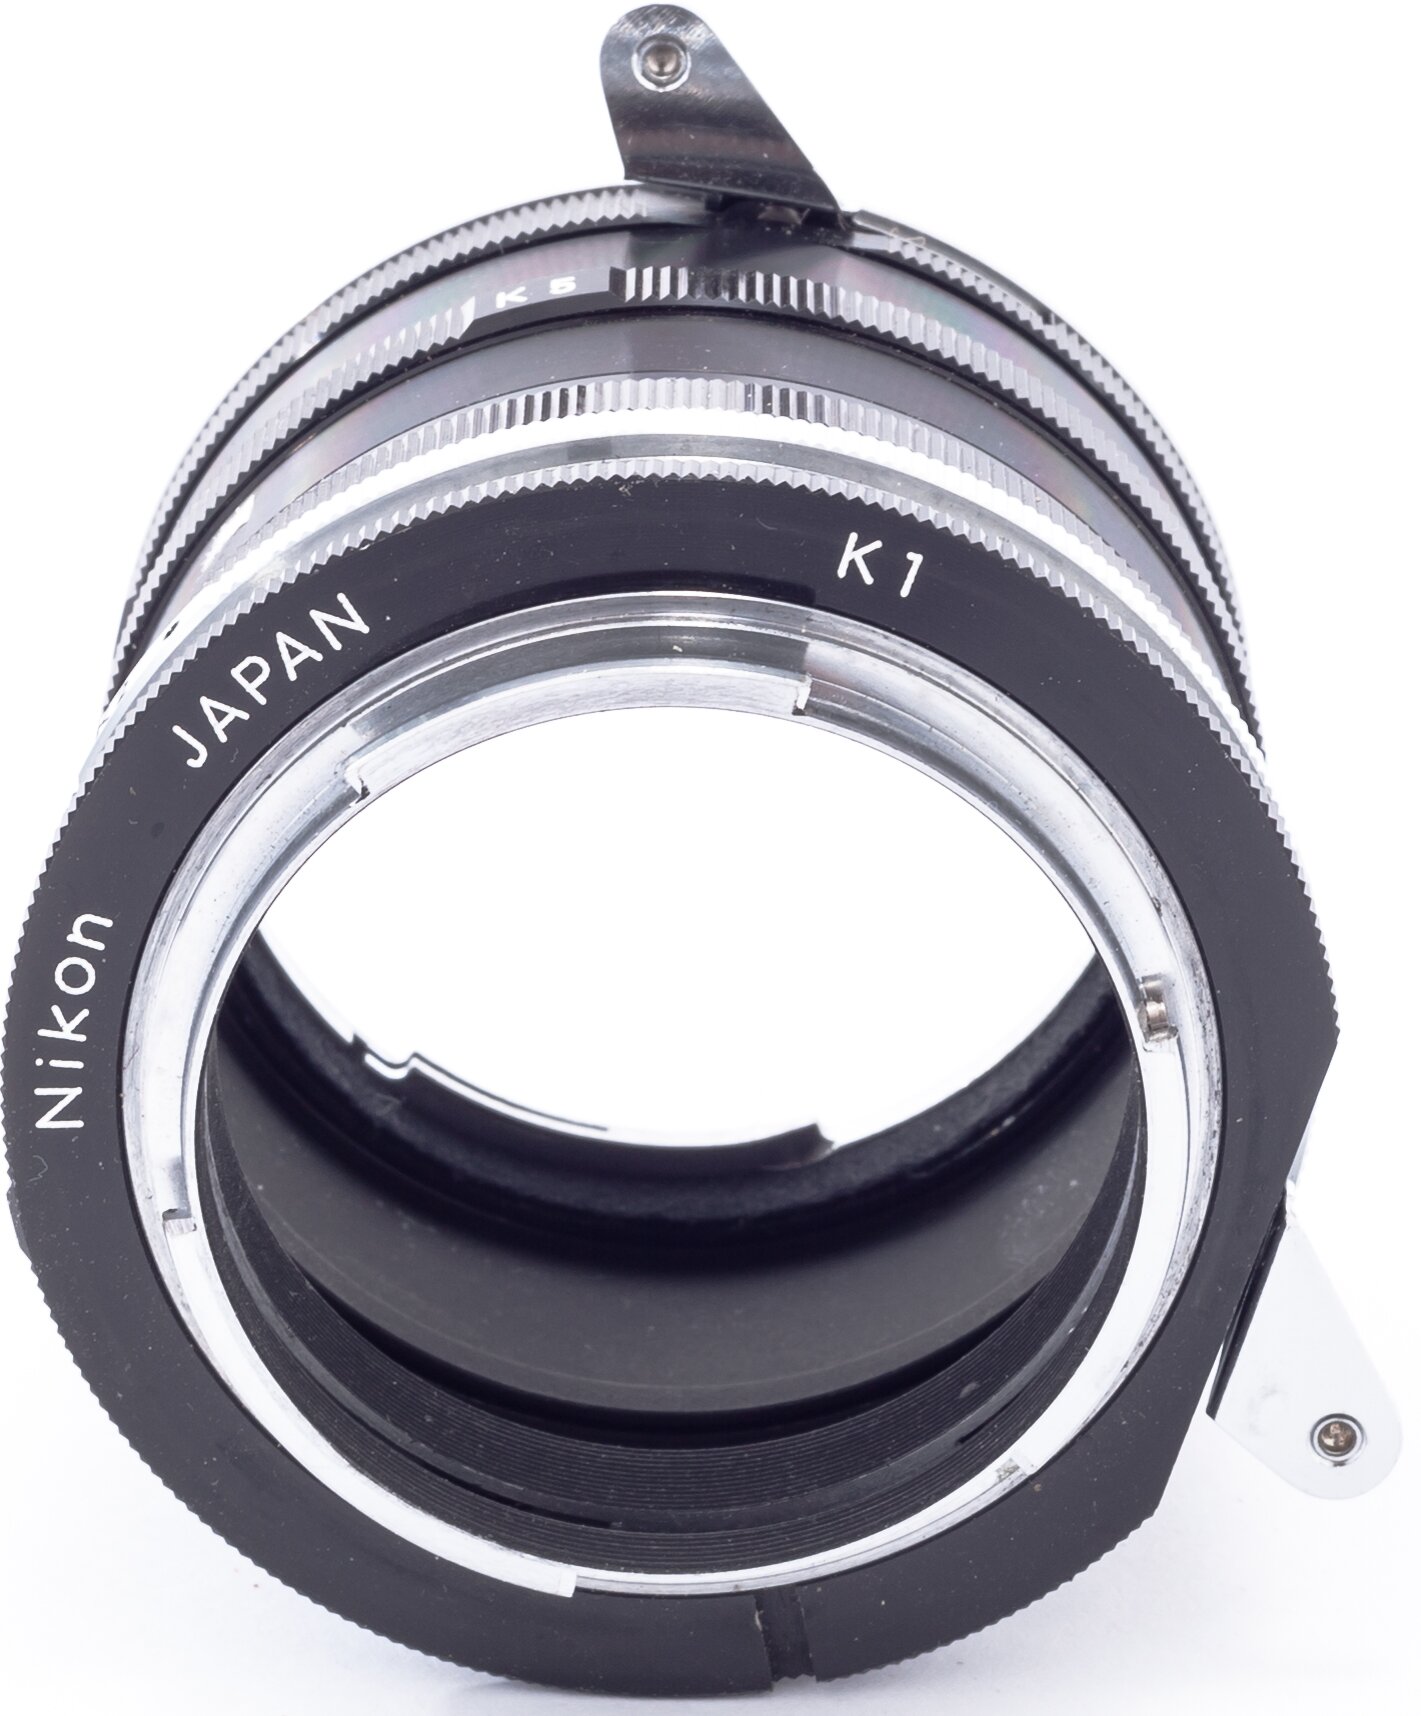 Nikon Extensionring-set  K1,2,3,4,5